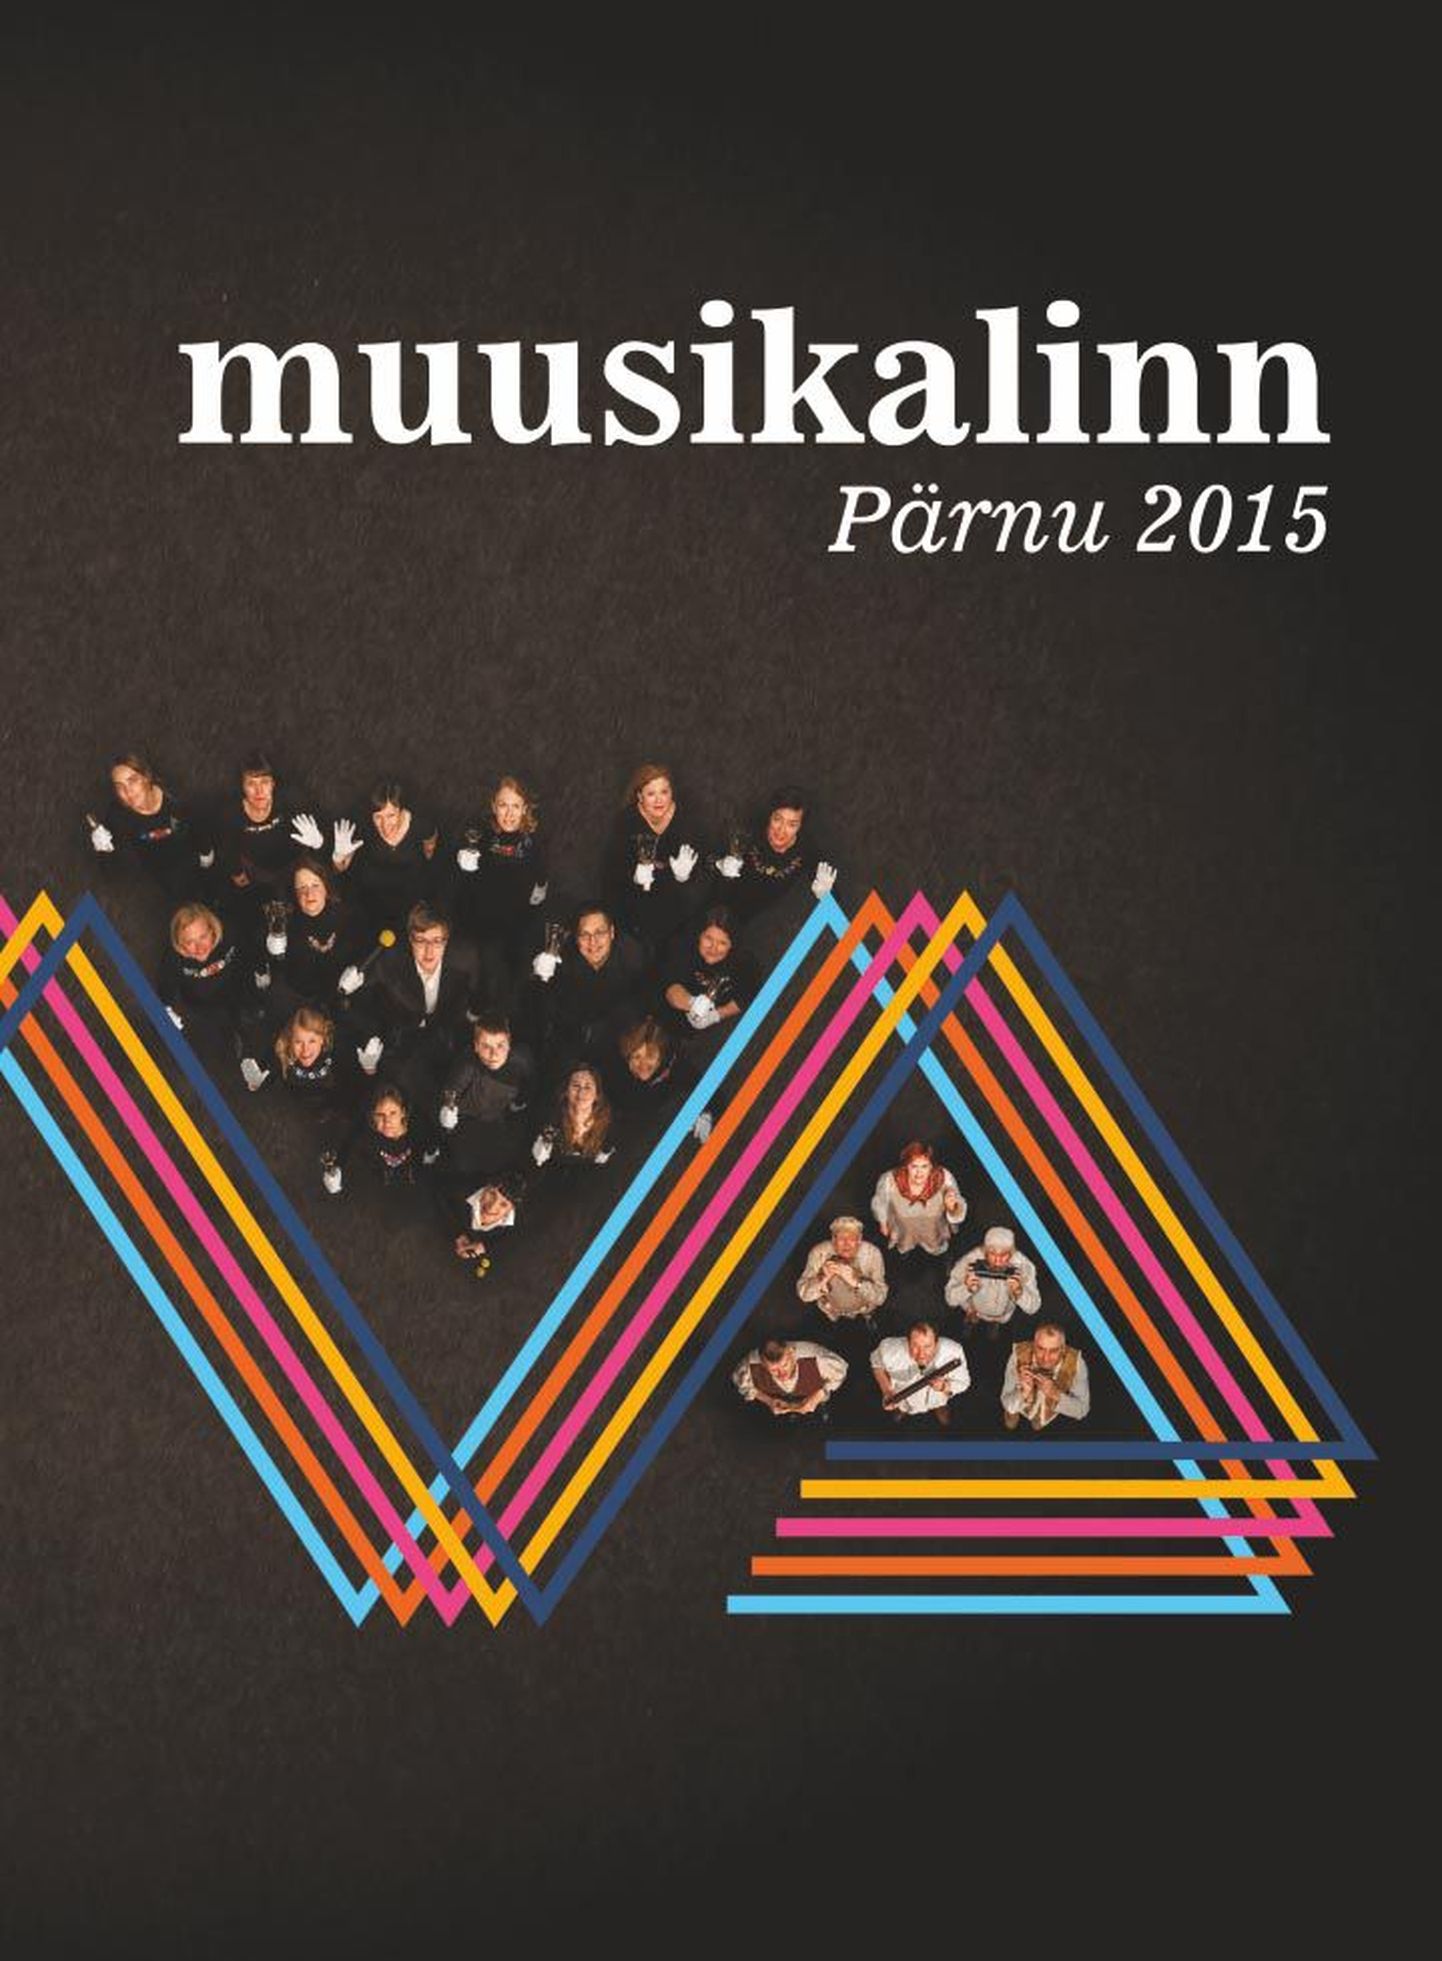 Trükise „Muusikalinn Pärnu 2015“ esikaas.